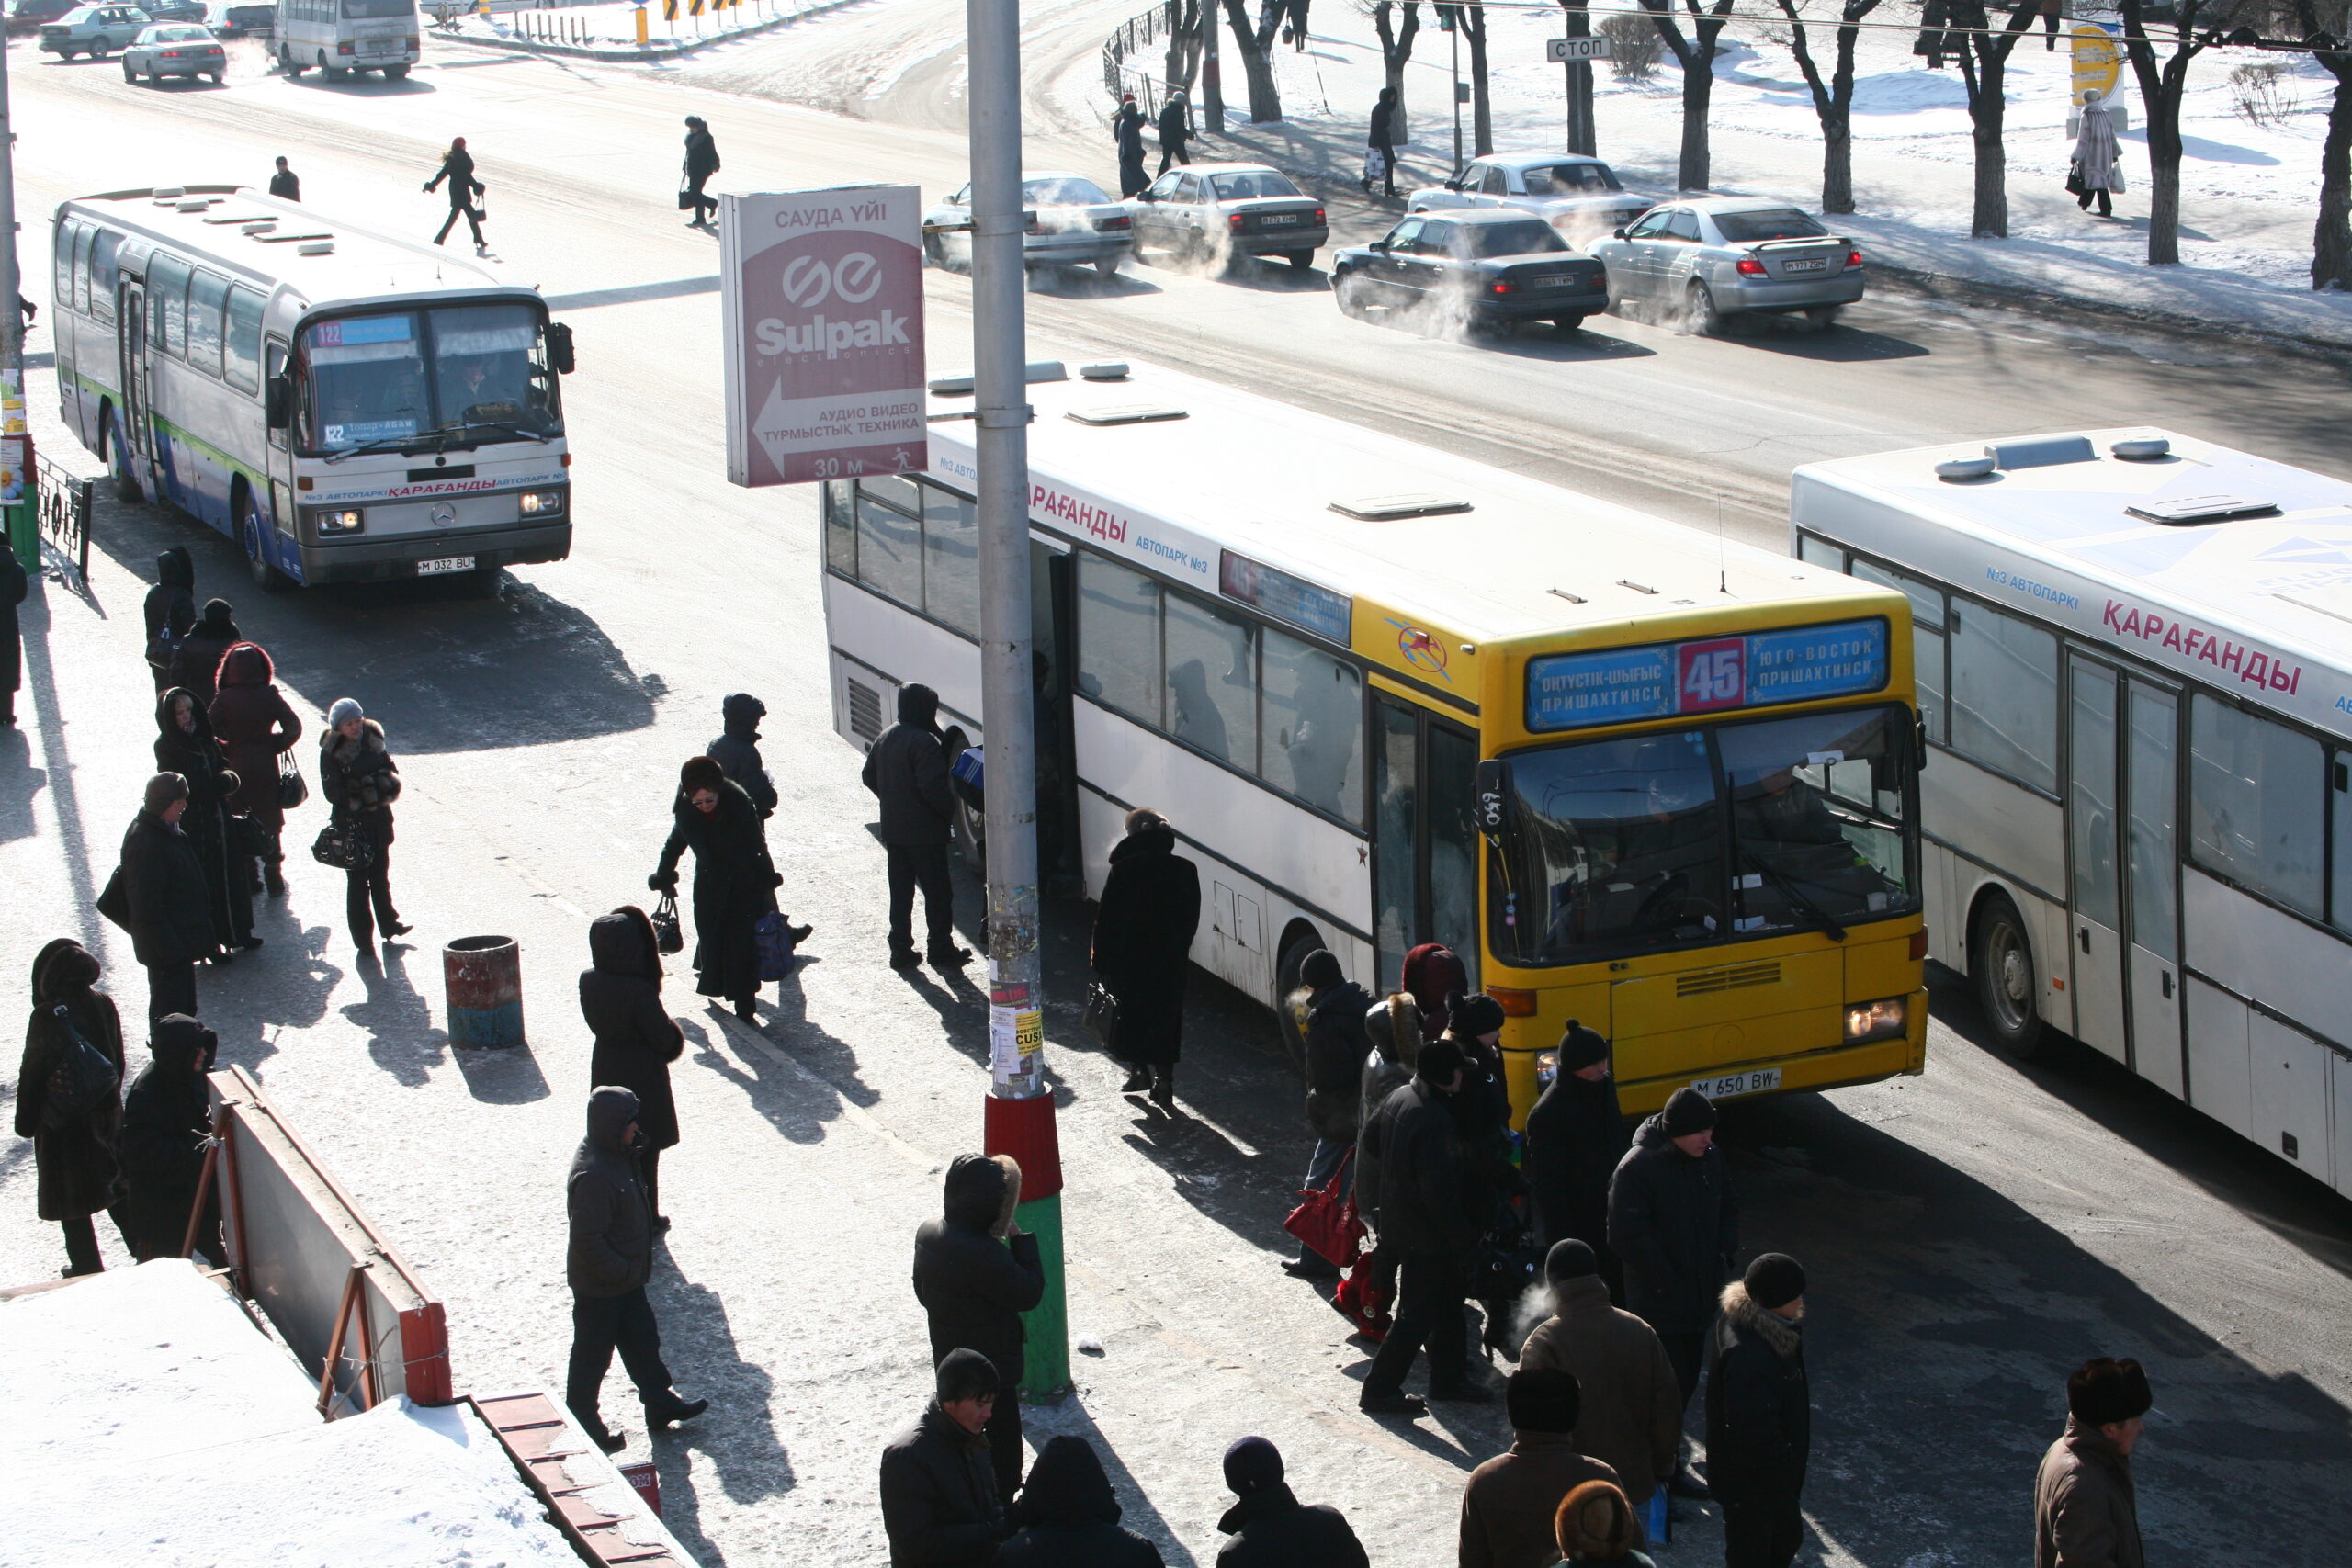 Исполняющий обязанности акима Караганды Мейрам Кожухов, по просьбе жителей, лично проверил температуру в салонах пассажирских автобусов.